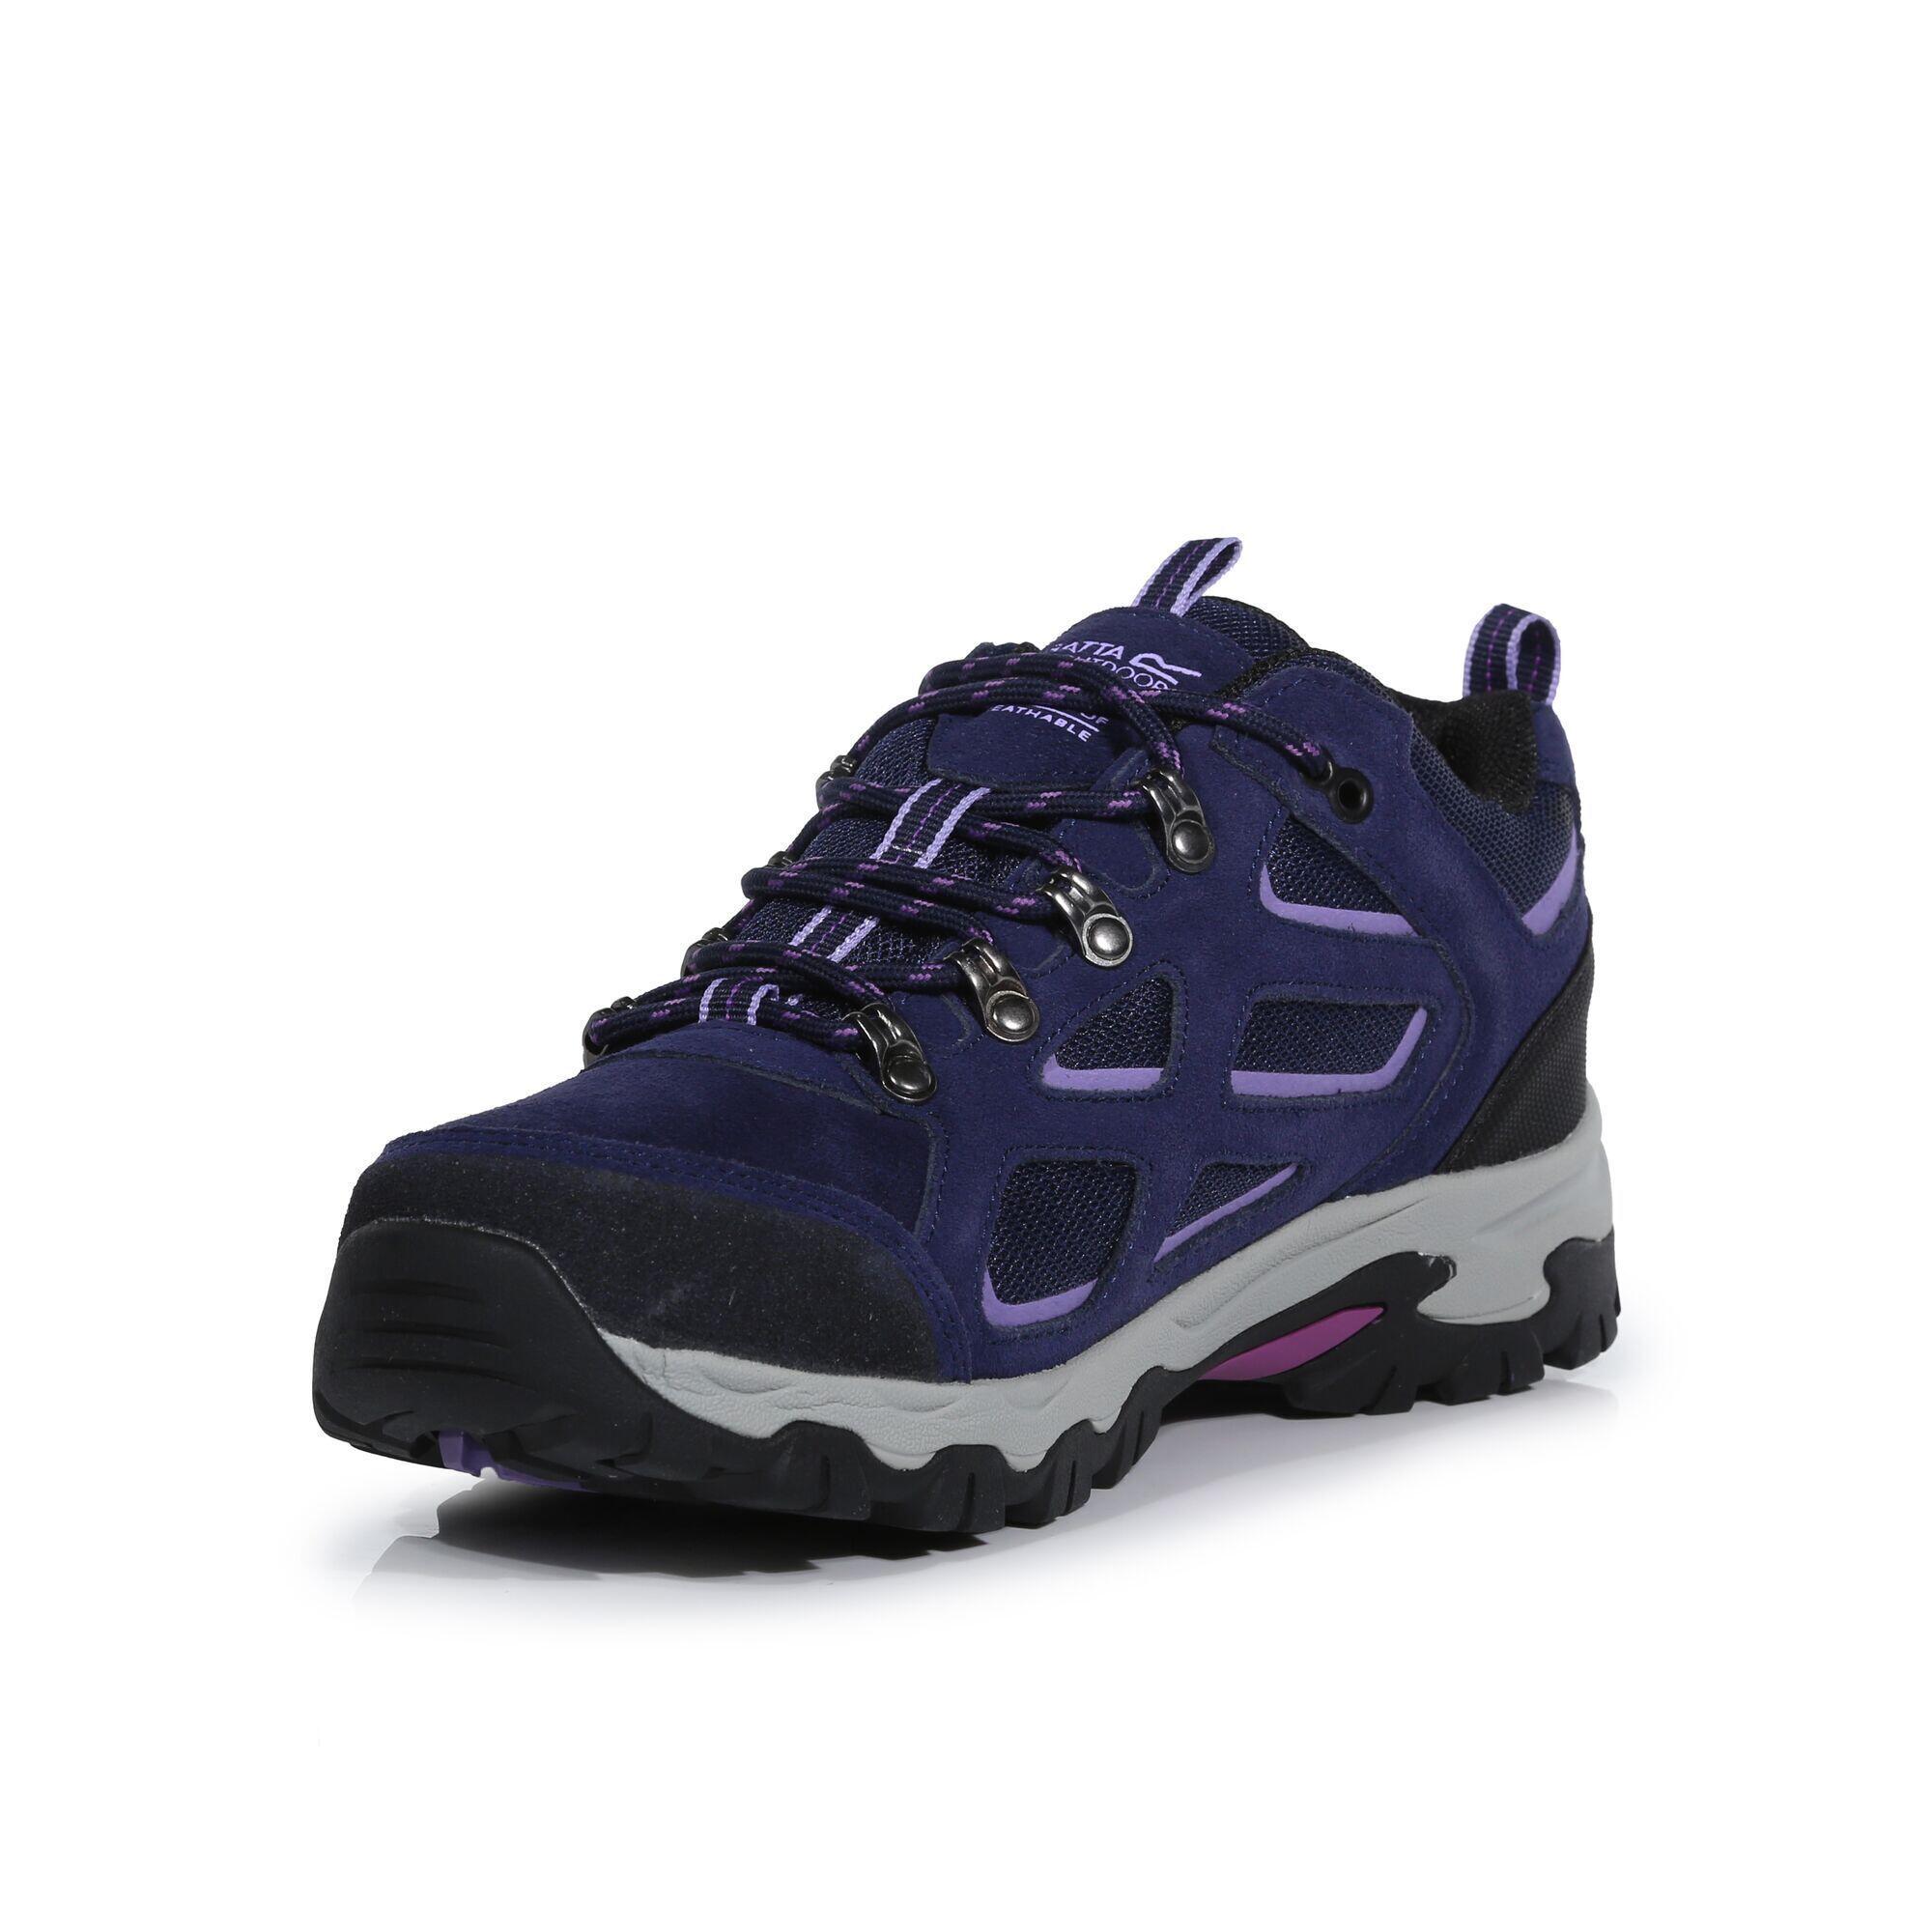 Womens/Ladies Tebay Waterproof Suede Walking Shoes (Midnight/Lilac Bloom) 3/5